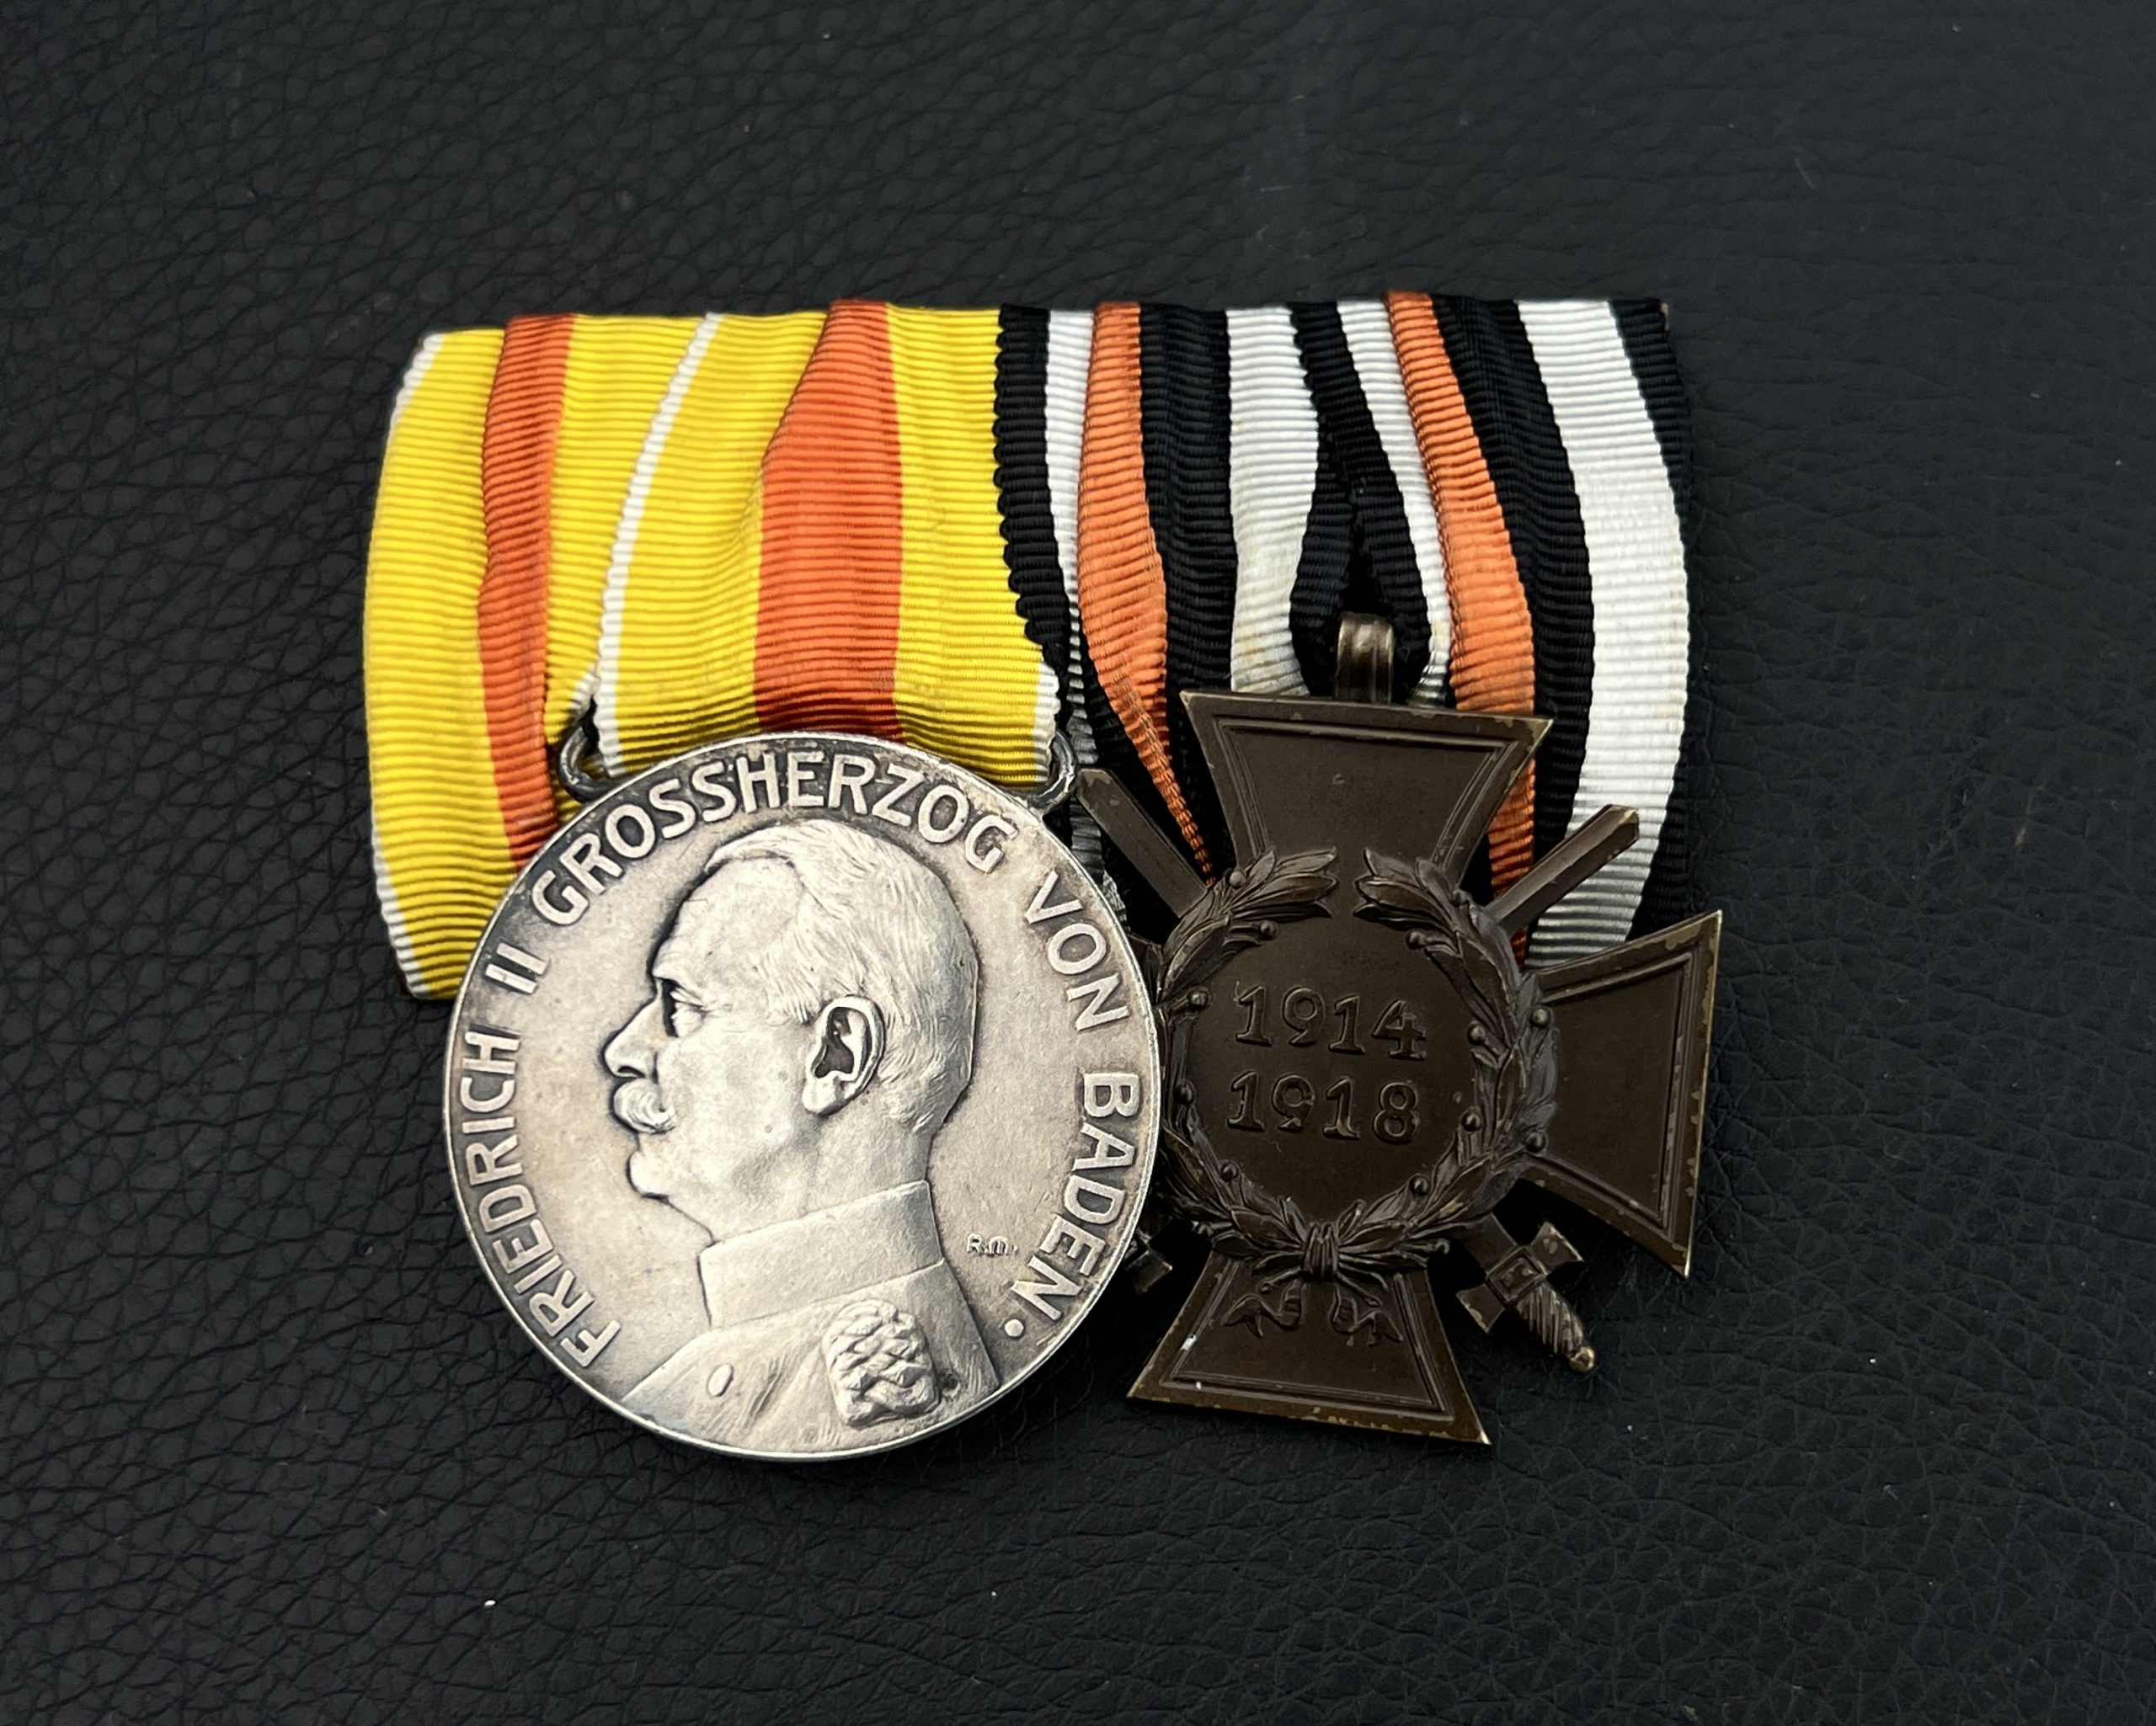 Колодка с двумя наградами (Медаль Заслуг и Крест Чести 1914-18). Великое герцогство Баден, Германская империя.